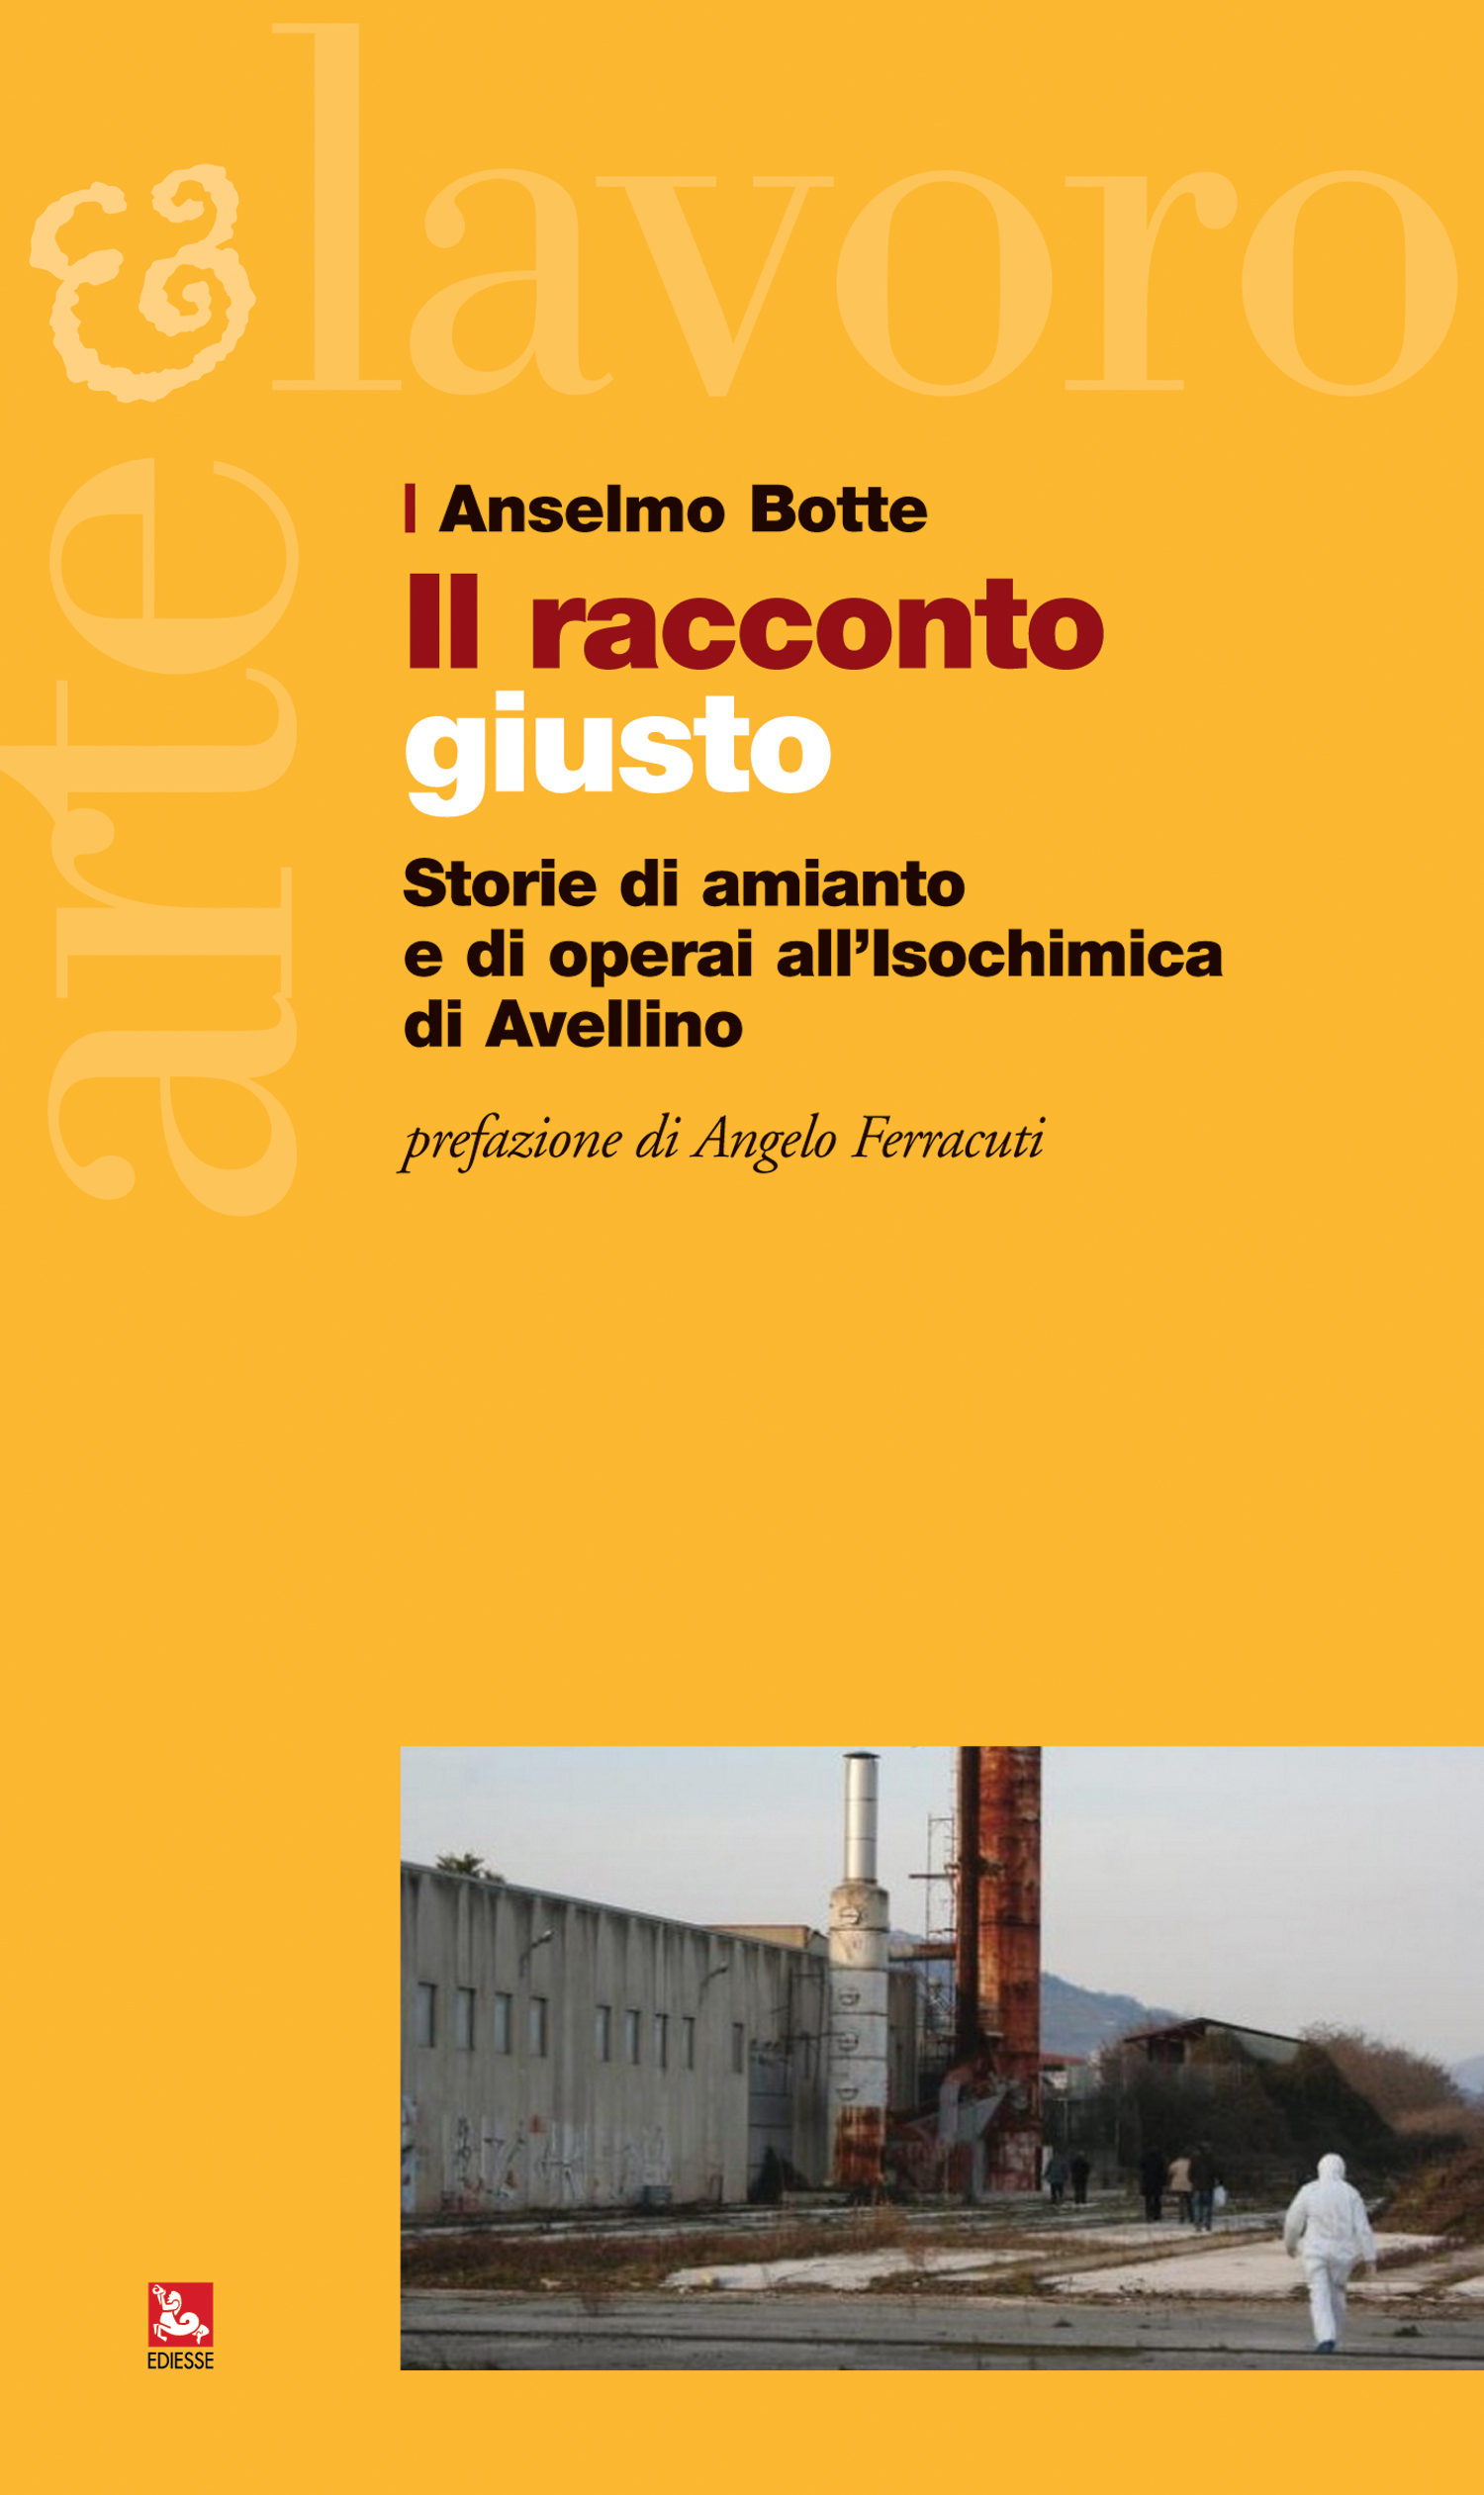 Il “racconto” raccoglie le testimonianze di alcuni lavoratori dell’Azienda Isochimica di Avellino che negli anni ’80 furono impegnati nella rimozione dell’amianto in 3mila carrozze delle Ferrovie dello Stato.